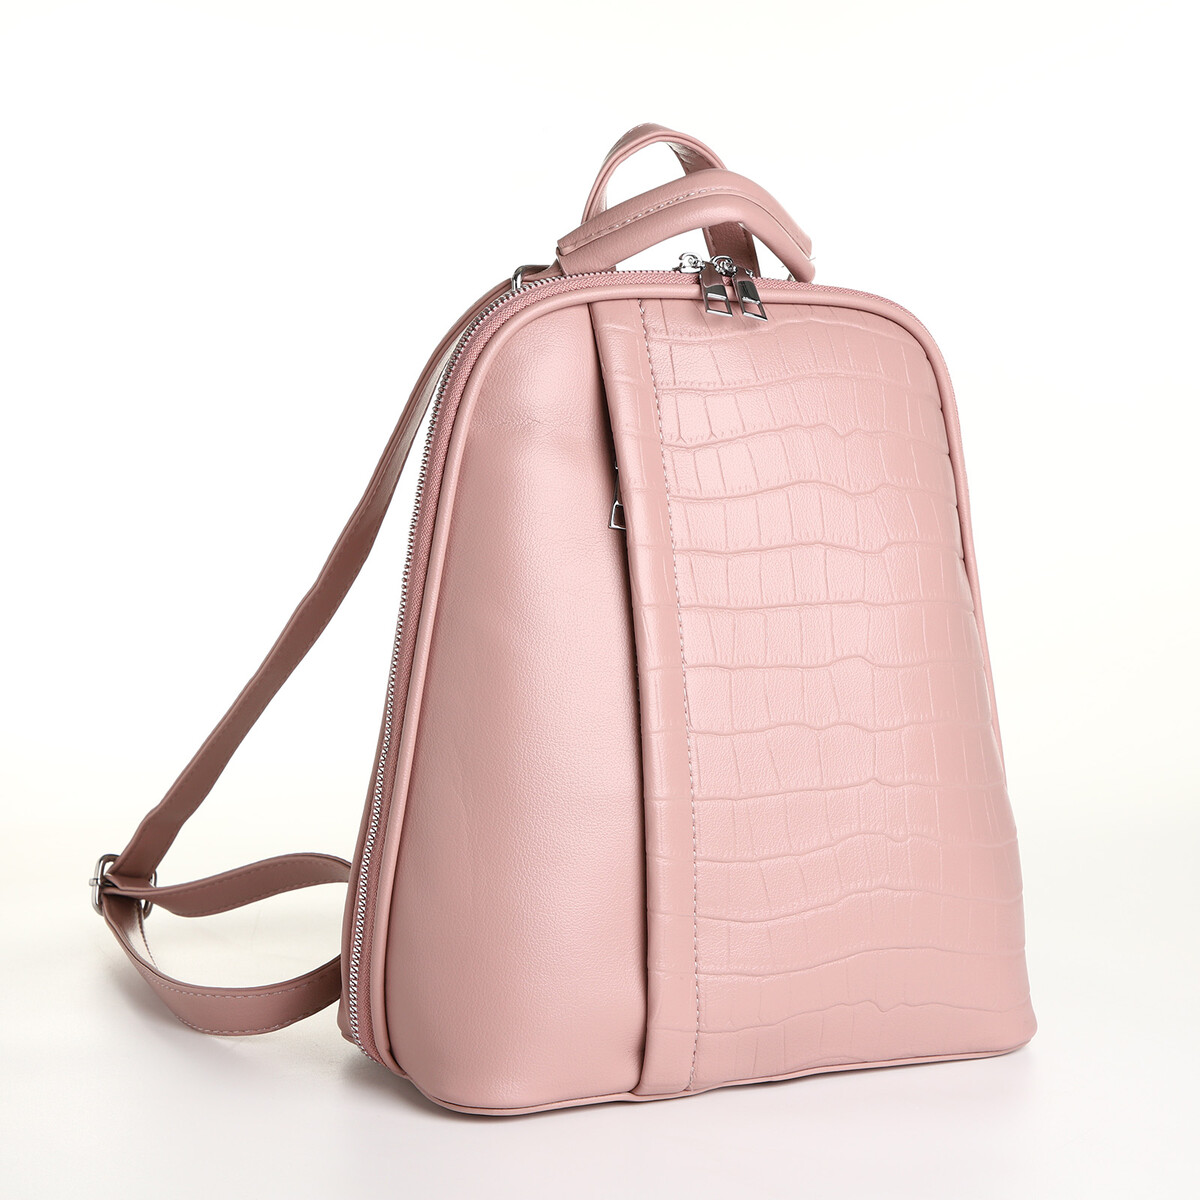 Рюкзак городской из искусственной кожи на молнии, цвет розовый